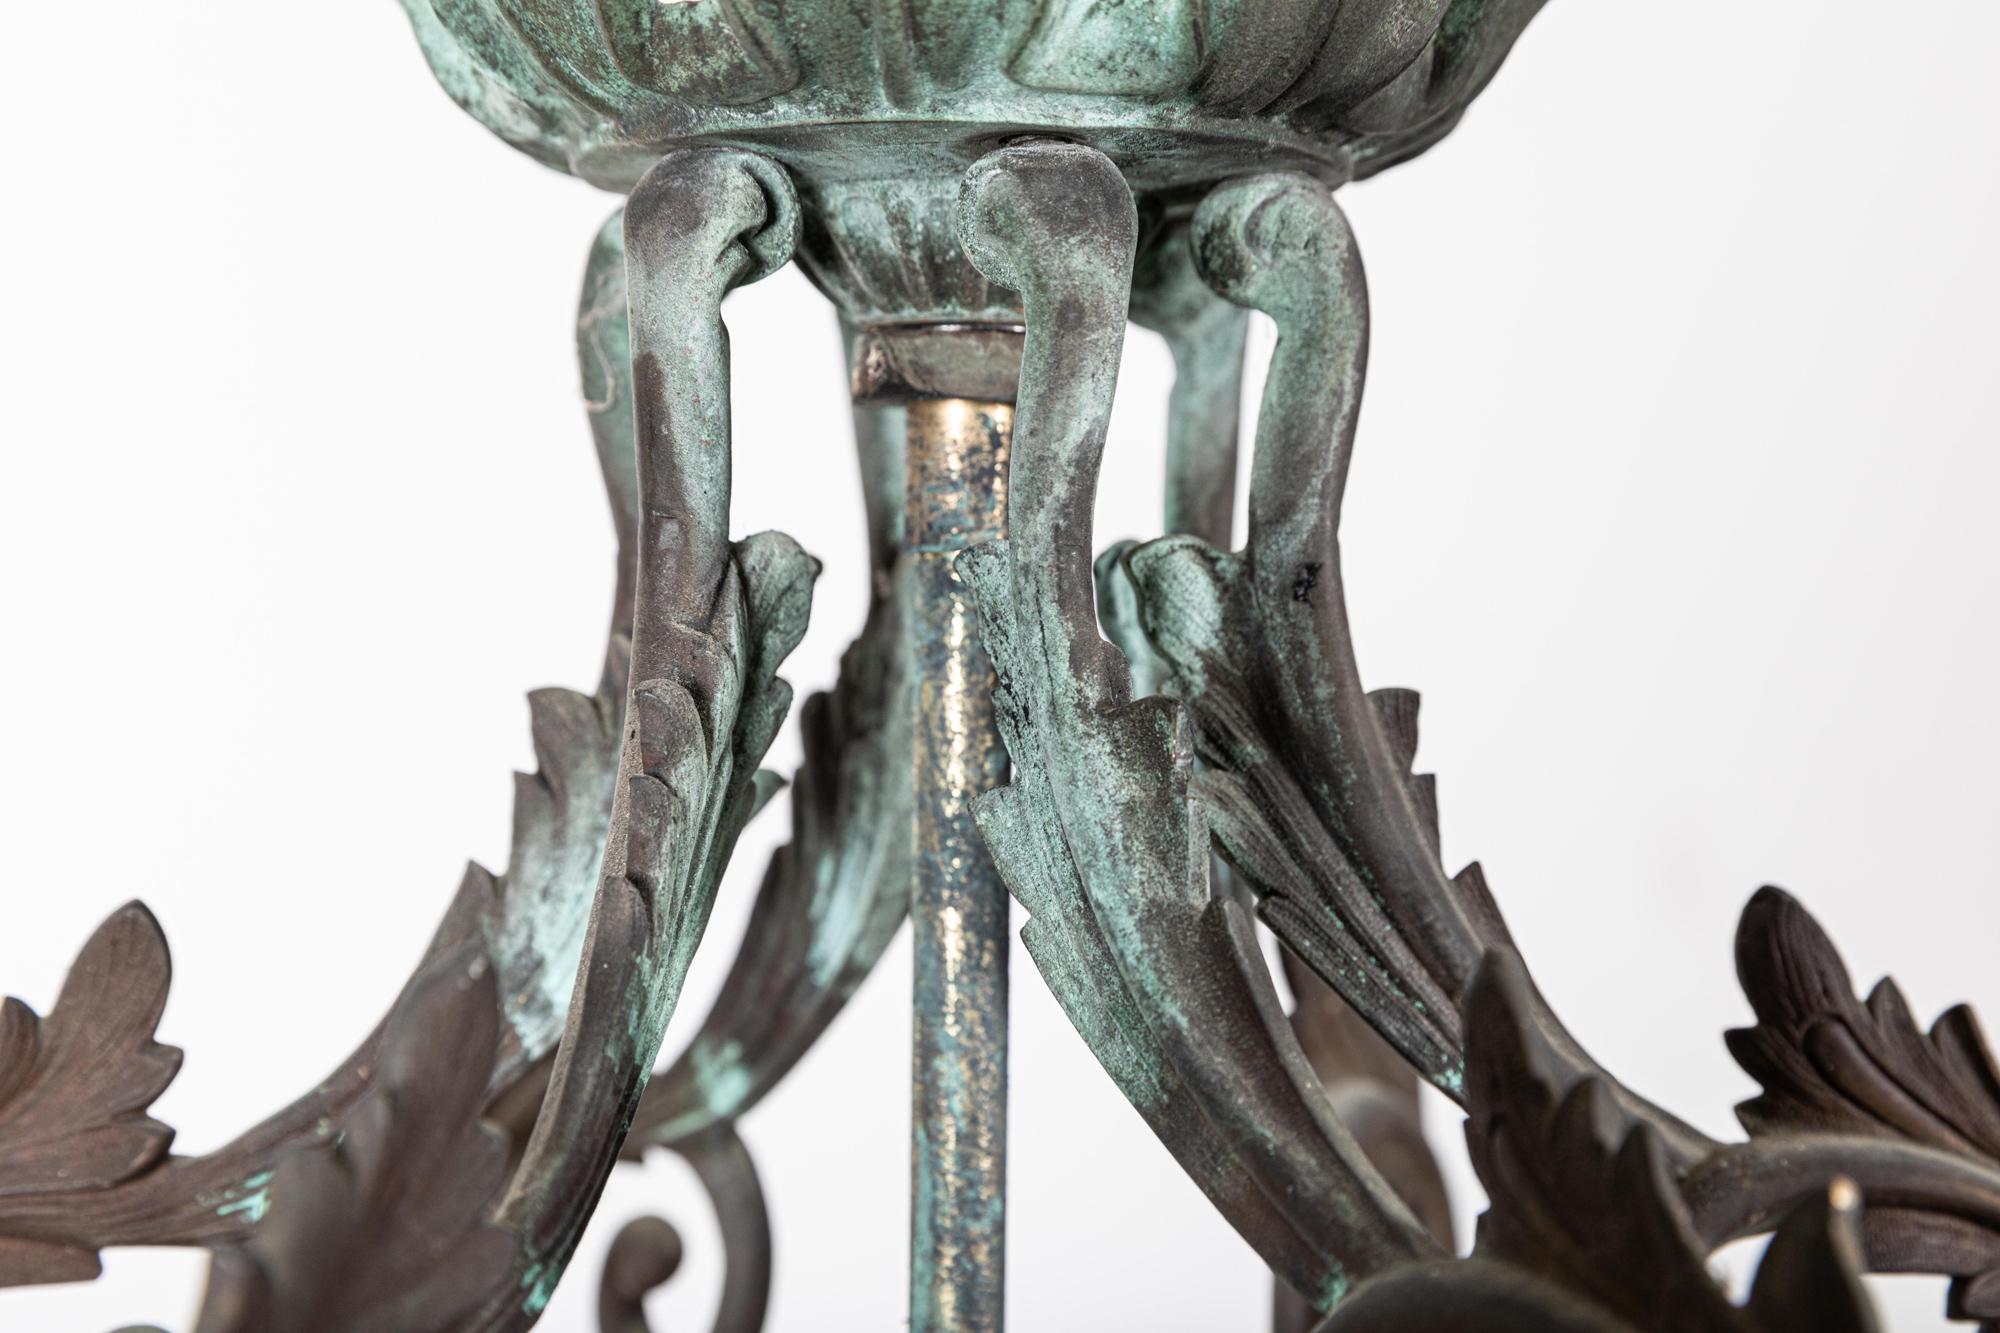 Circa 1800

Englische georgianische sechseckige glasierte Messing/Bronze Verdigris Laterne

Außergewöhnliche Qualität, neu verdrahtet mit originaler Kette und Aufhängehaken

Maße: B33 x T33 x H57 cm.

 